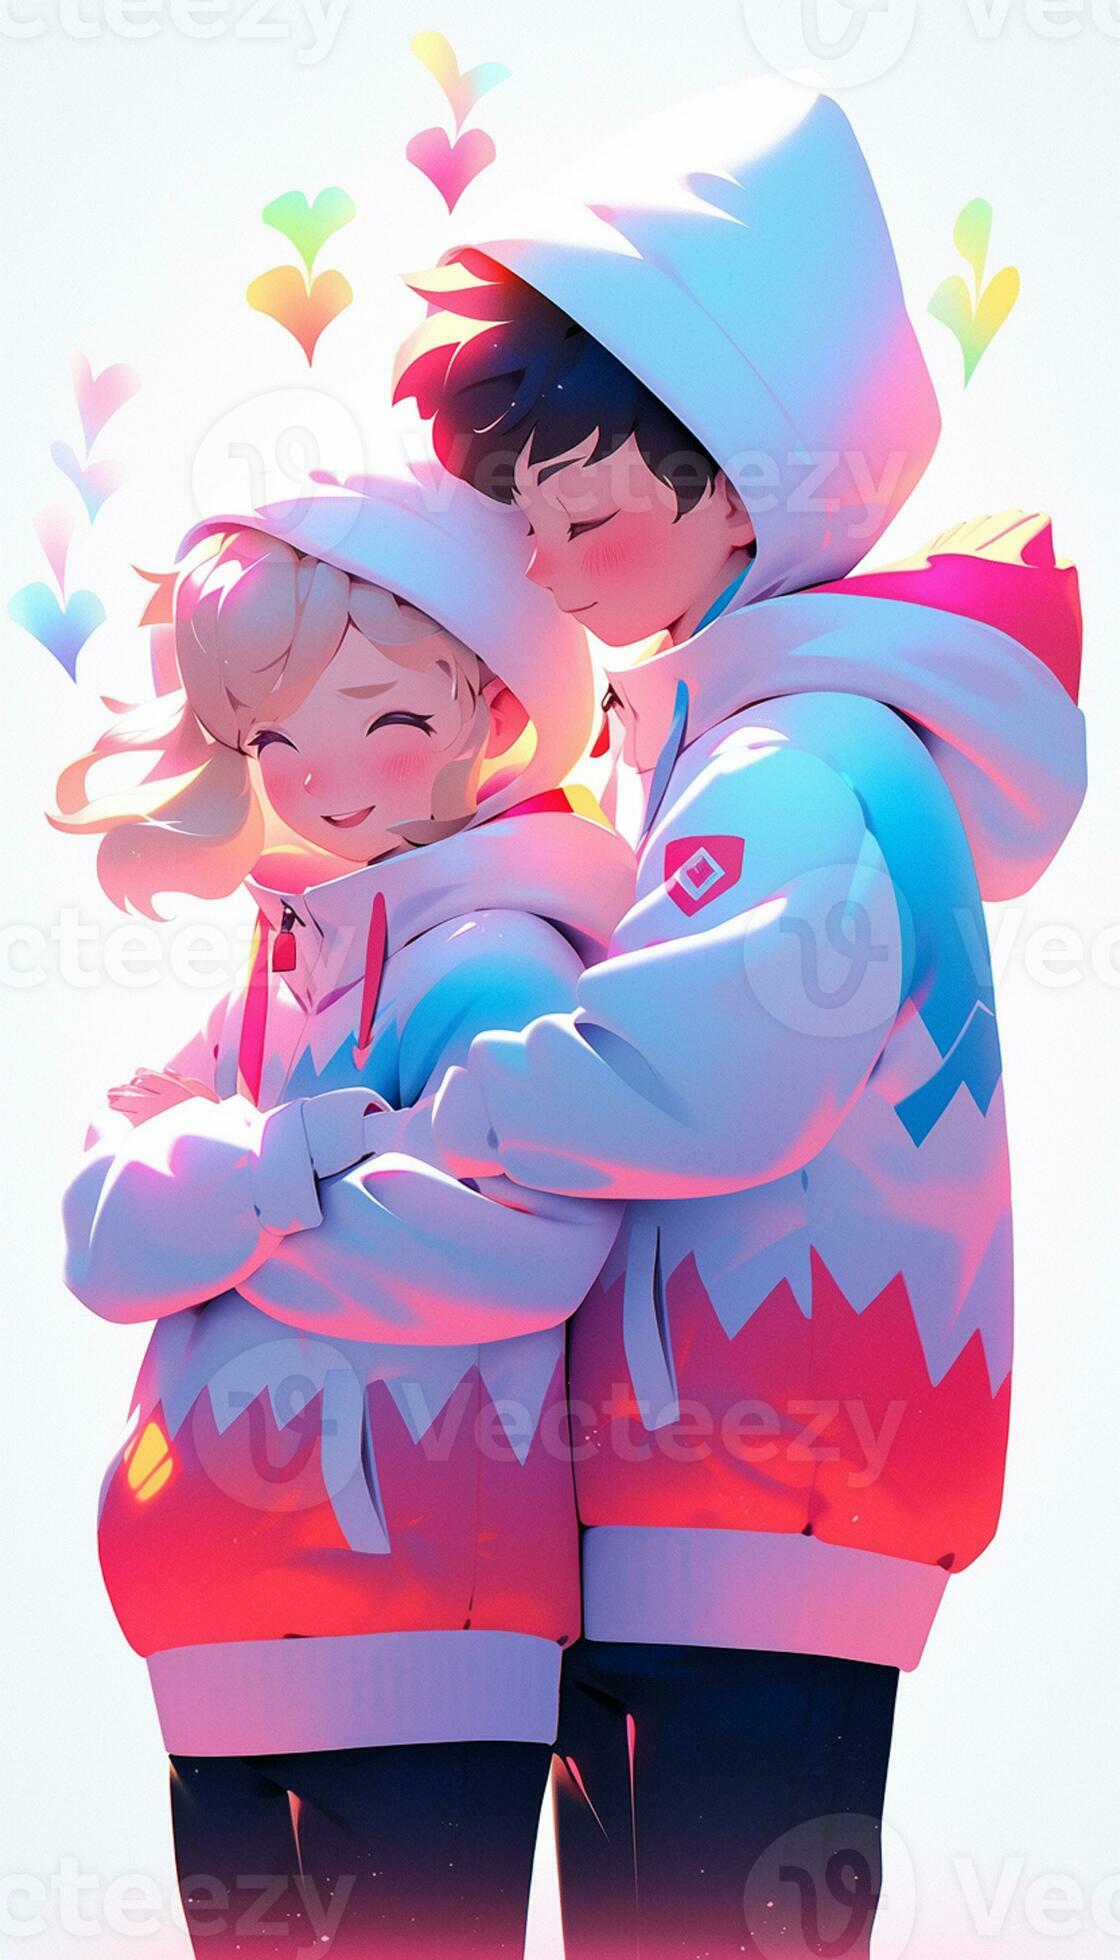 Anime Love Hugging Couple GIF | GIFDB.com